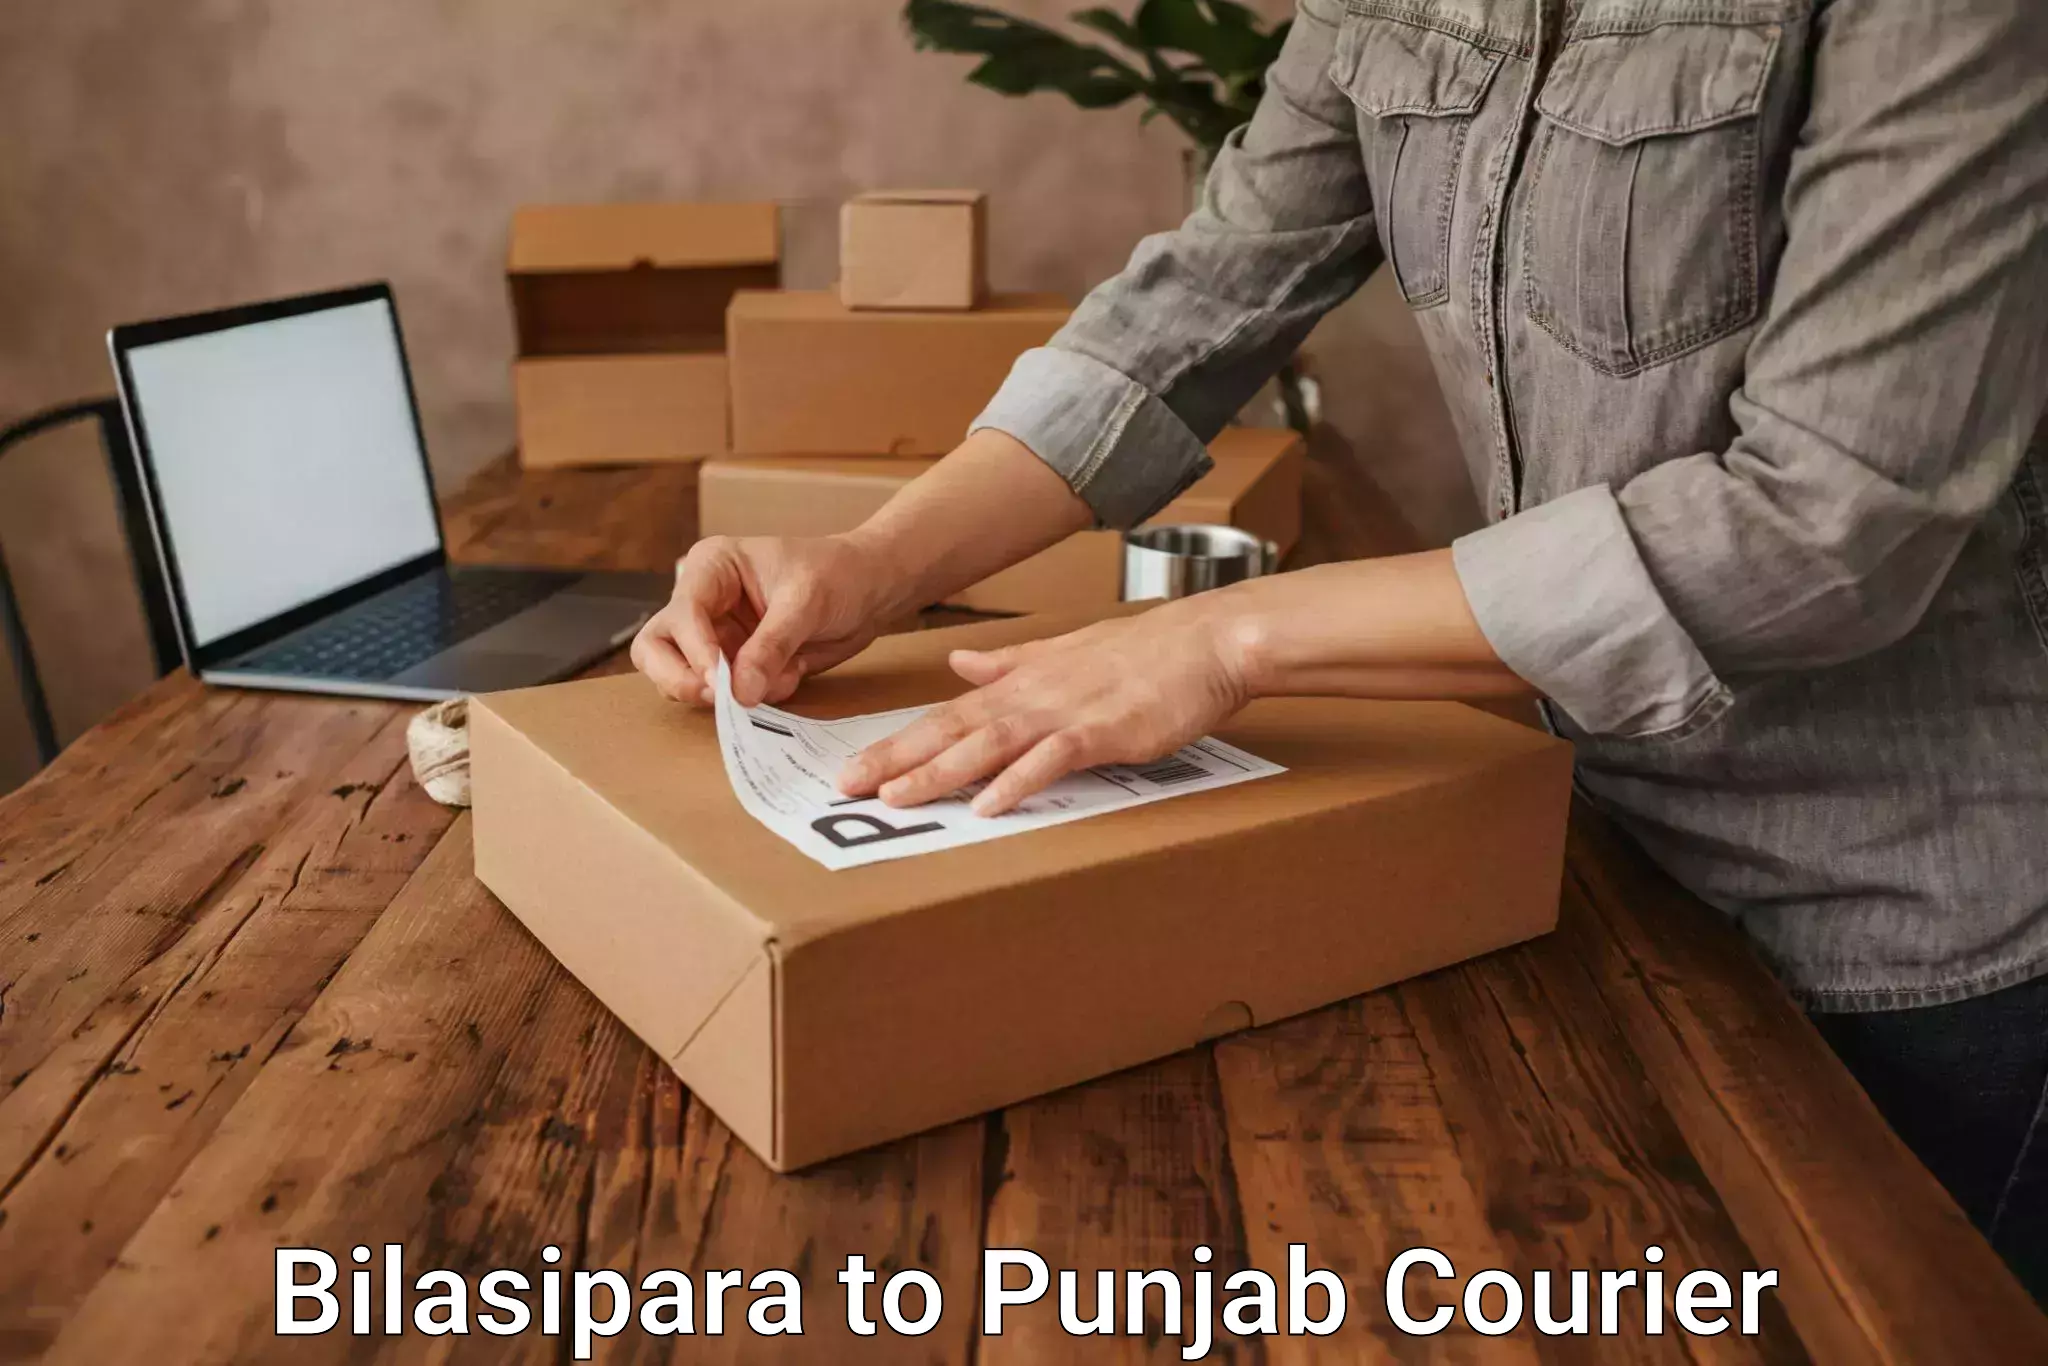 Bulk courier orders Bilasipara to Punjab